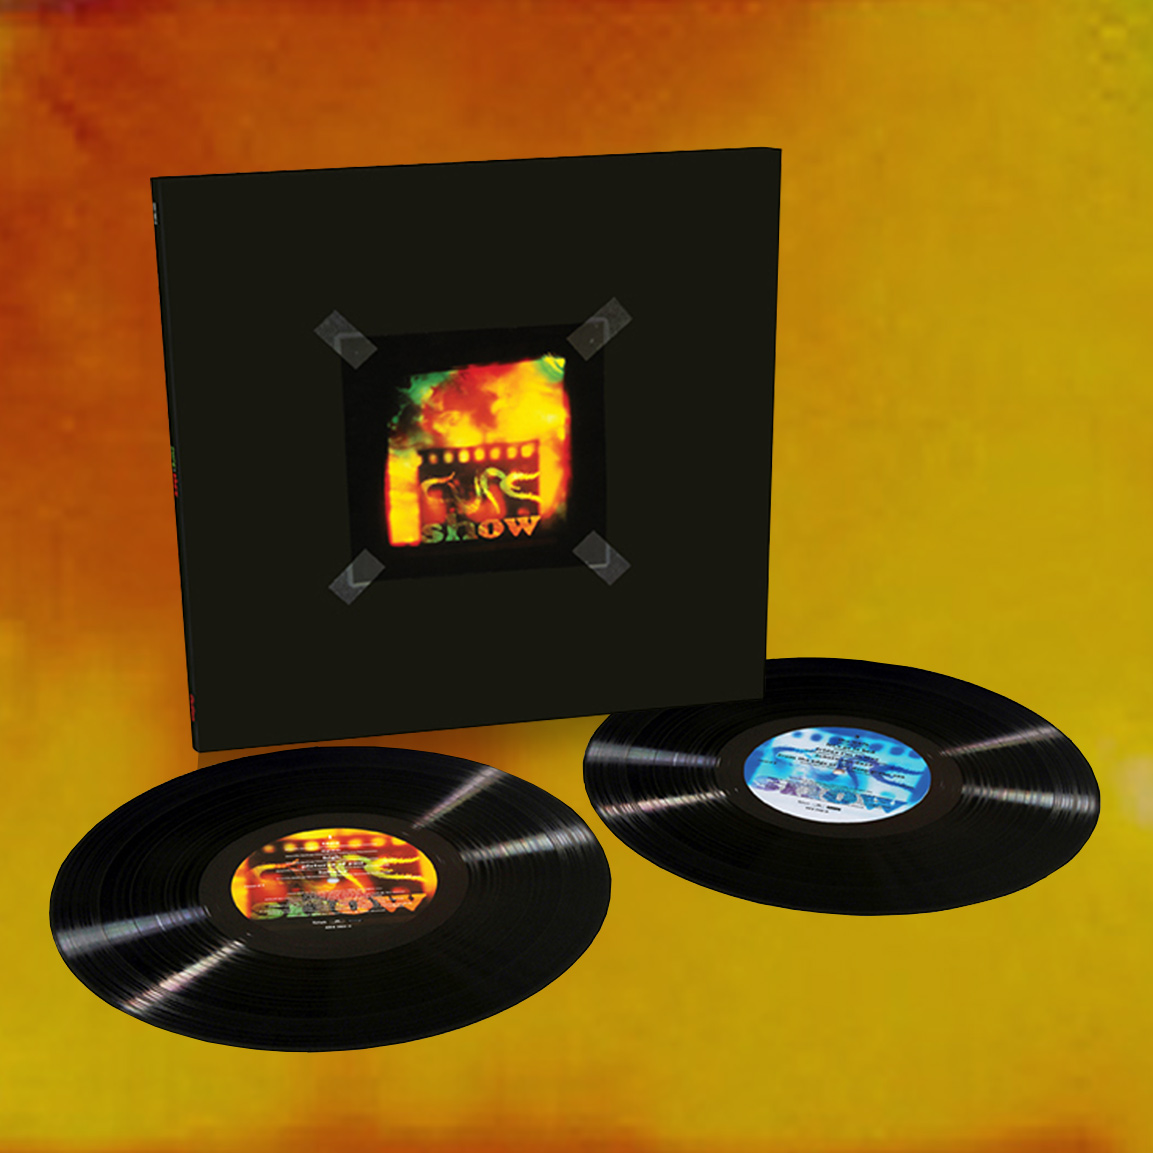 The Cure - Show (Vinilo RSD '23) – Del Bravo Record Shop